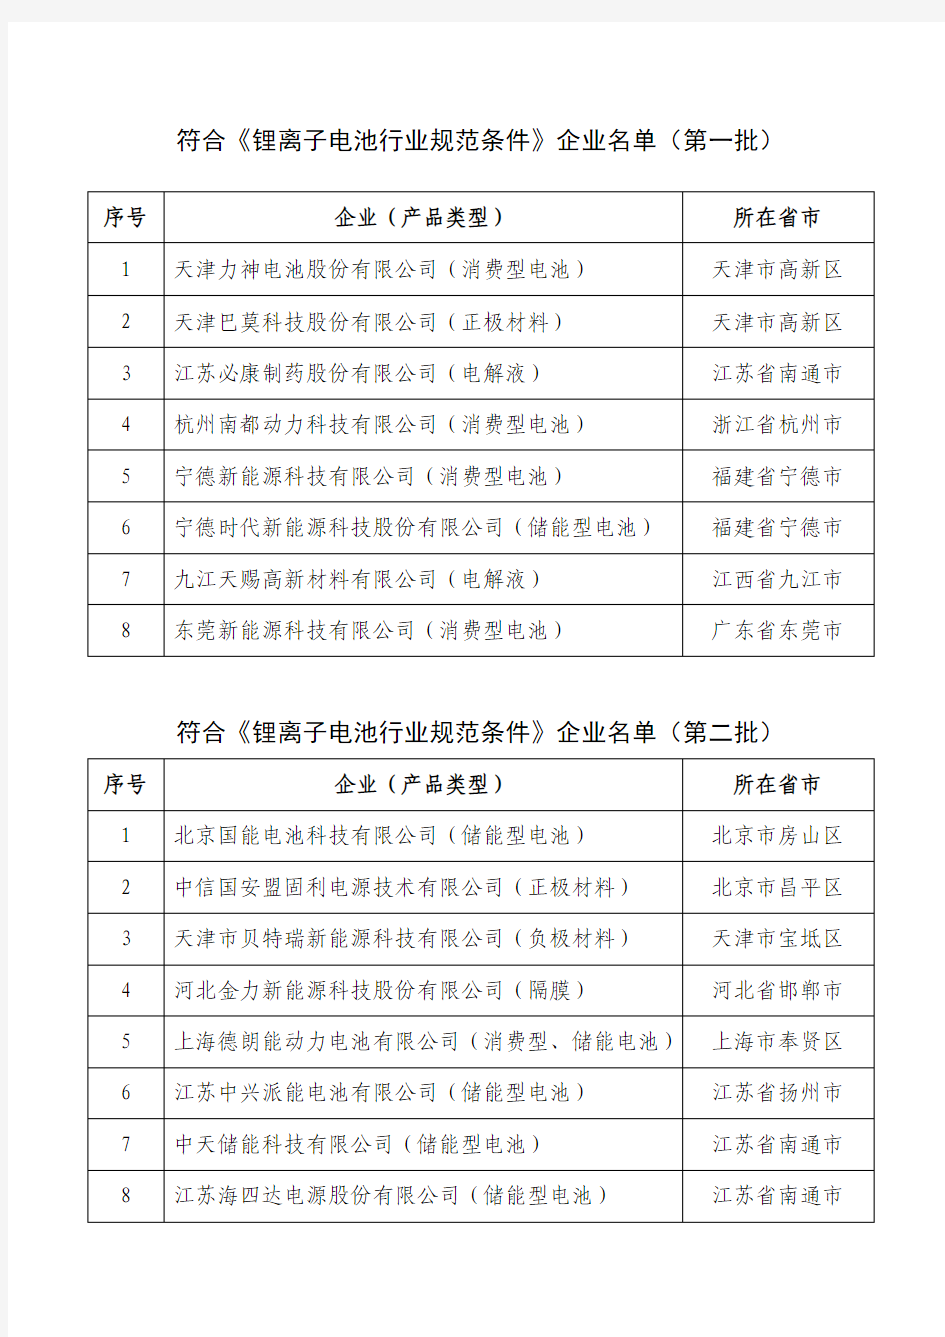 符合《锂离子电池行业规范条件》企业名单(第一、第二批汇总)